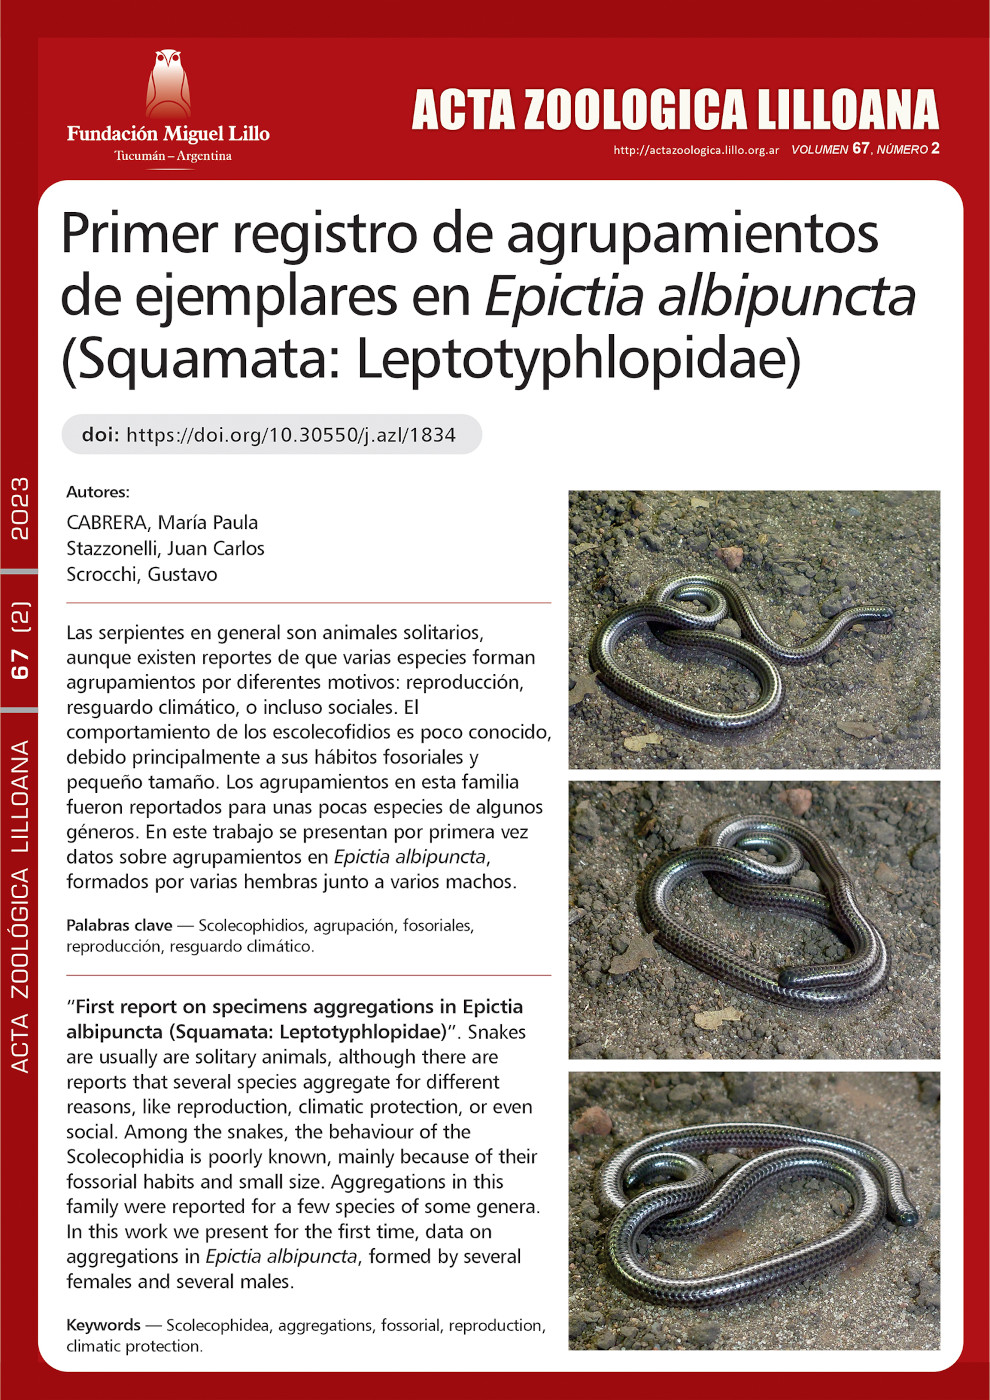 Primer registro de agrupamientos de ejemplares en Epictia albipuncta (Squamata: Leptotyphlopidae)